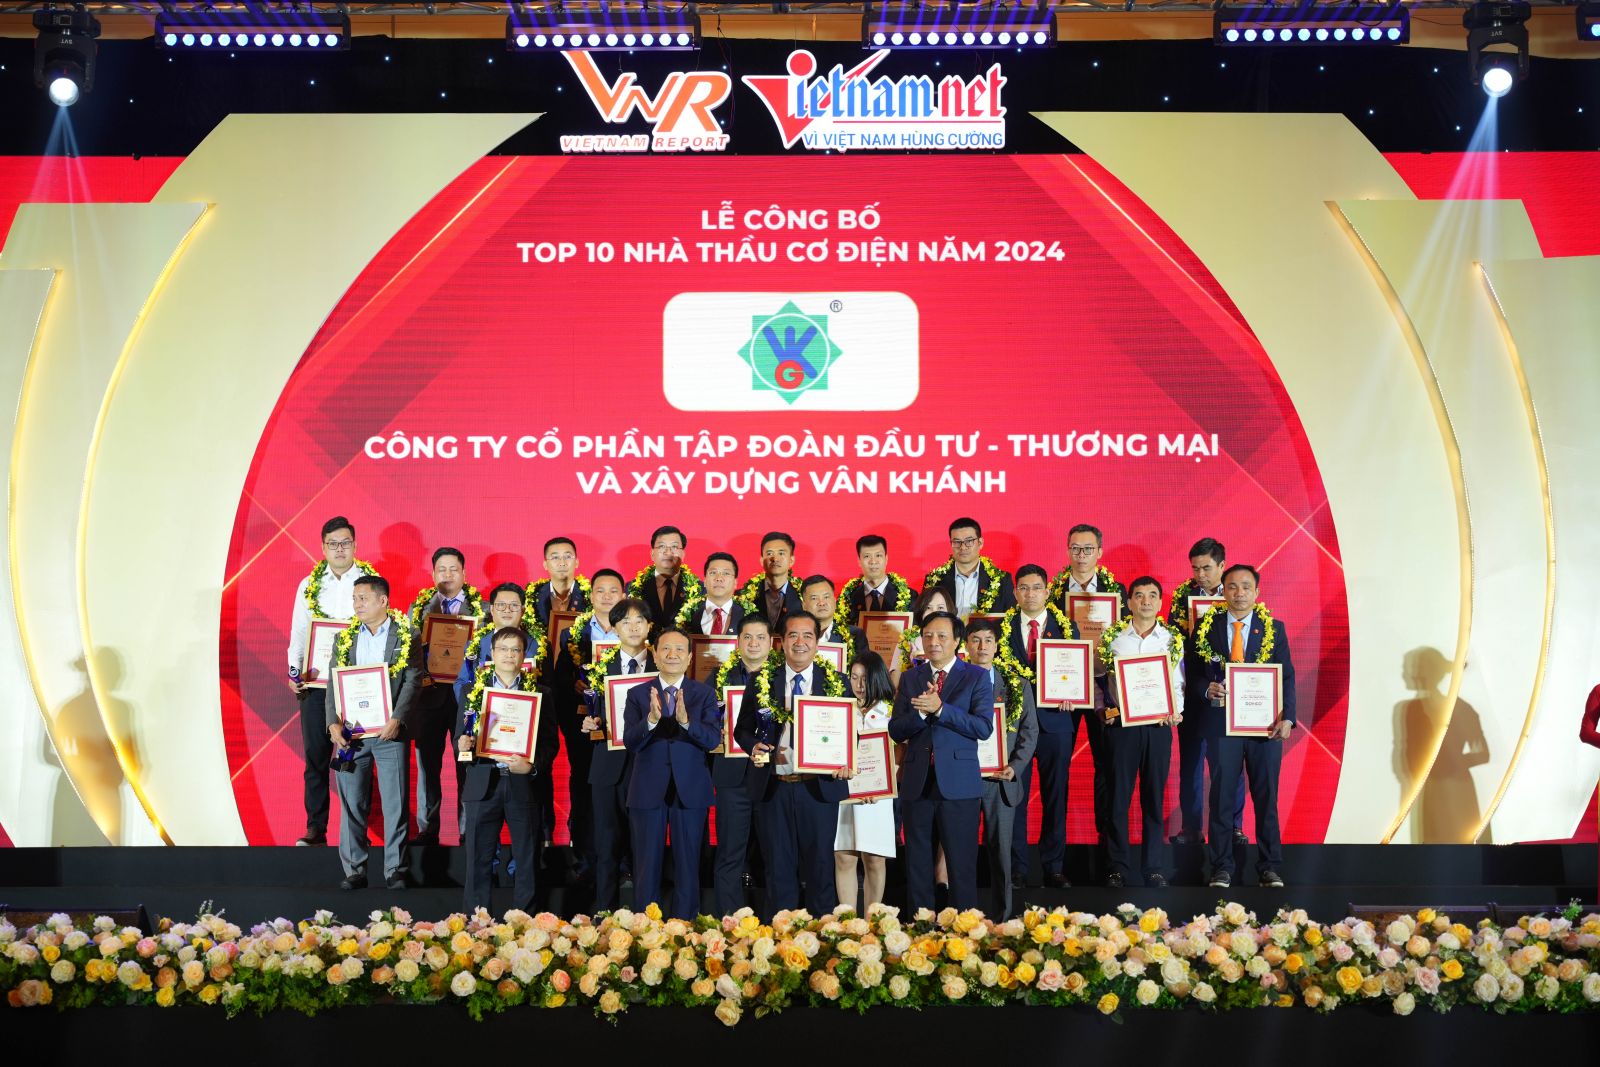 VKG – Vinh danh Top 10 Nhà thầu Cơ điện và Top 500 Doanh nghiệp tăng trưởng nhanh nhất Việt Nam năm 2024